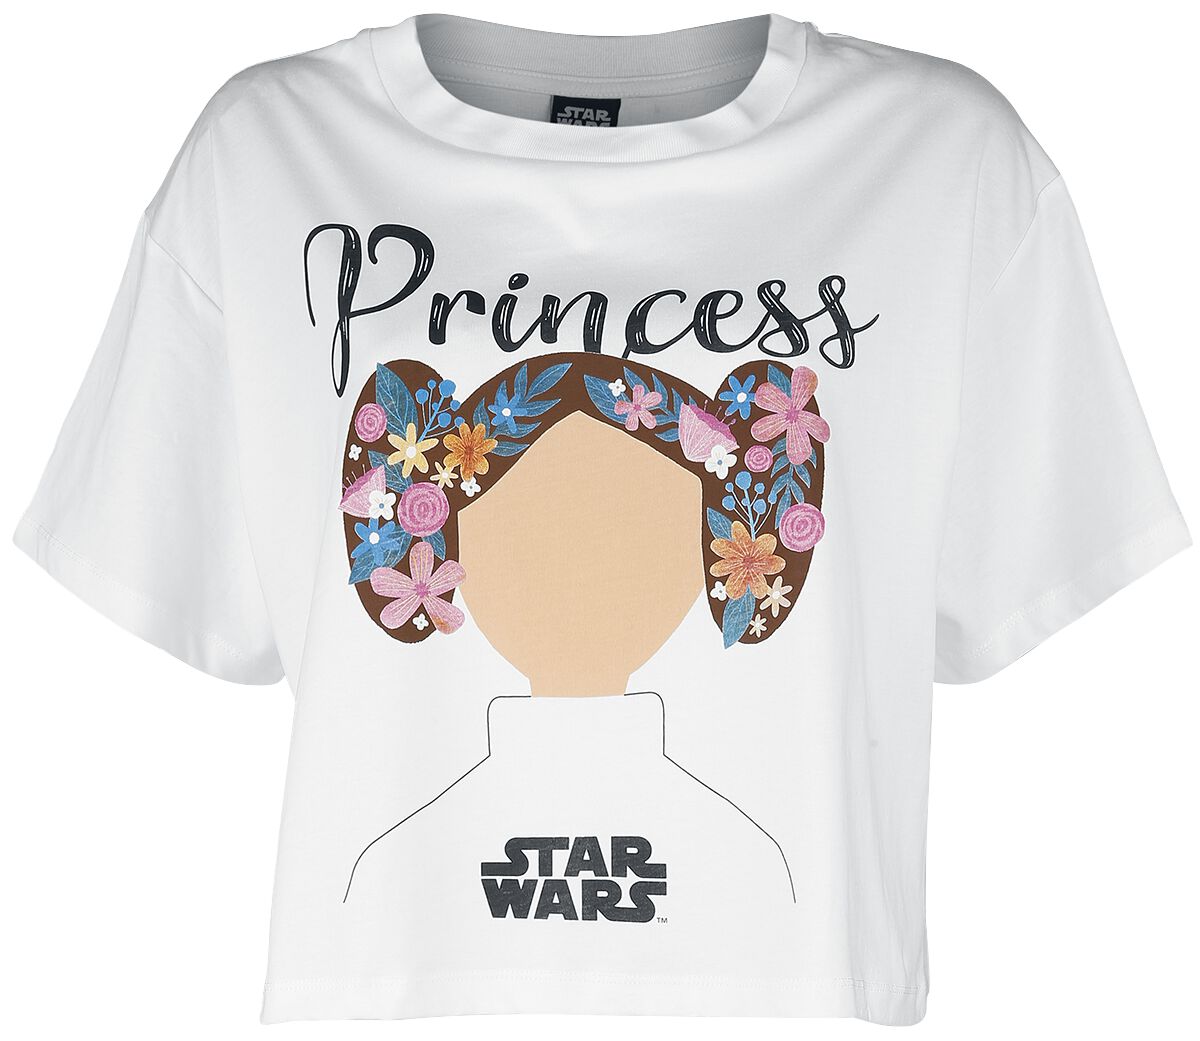 Star Wars Star Wars - Princess Lea T-Shirt weiß in L